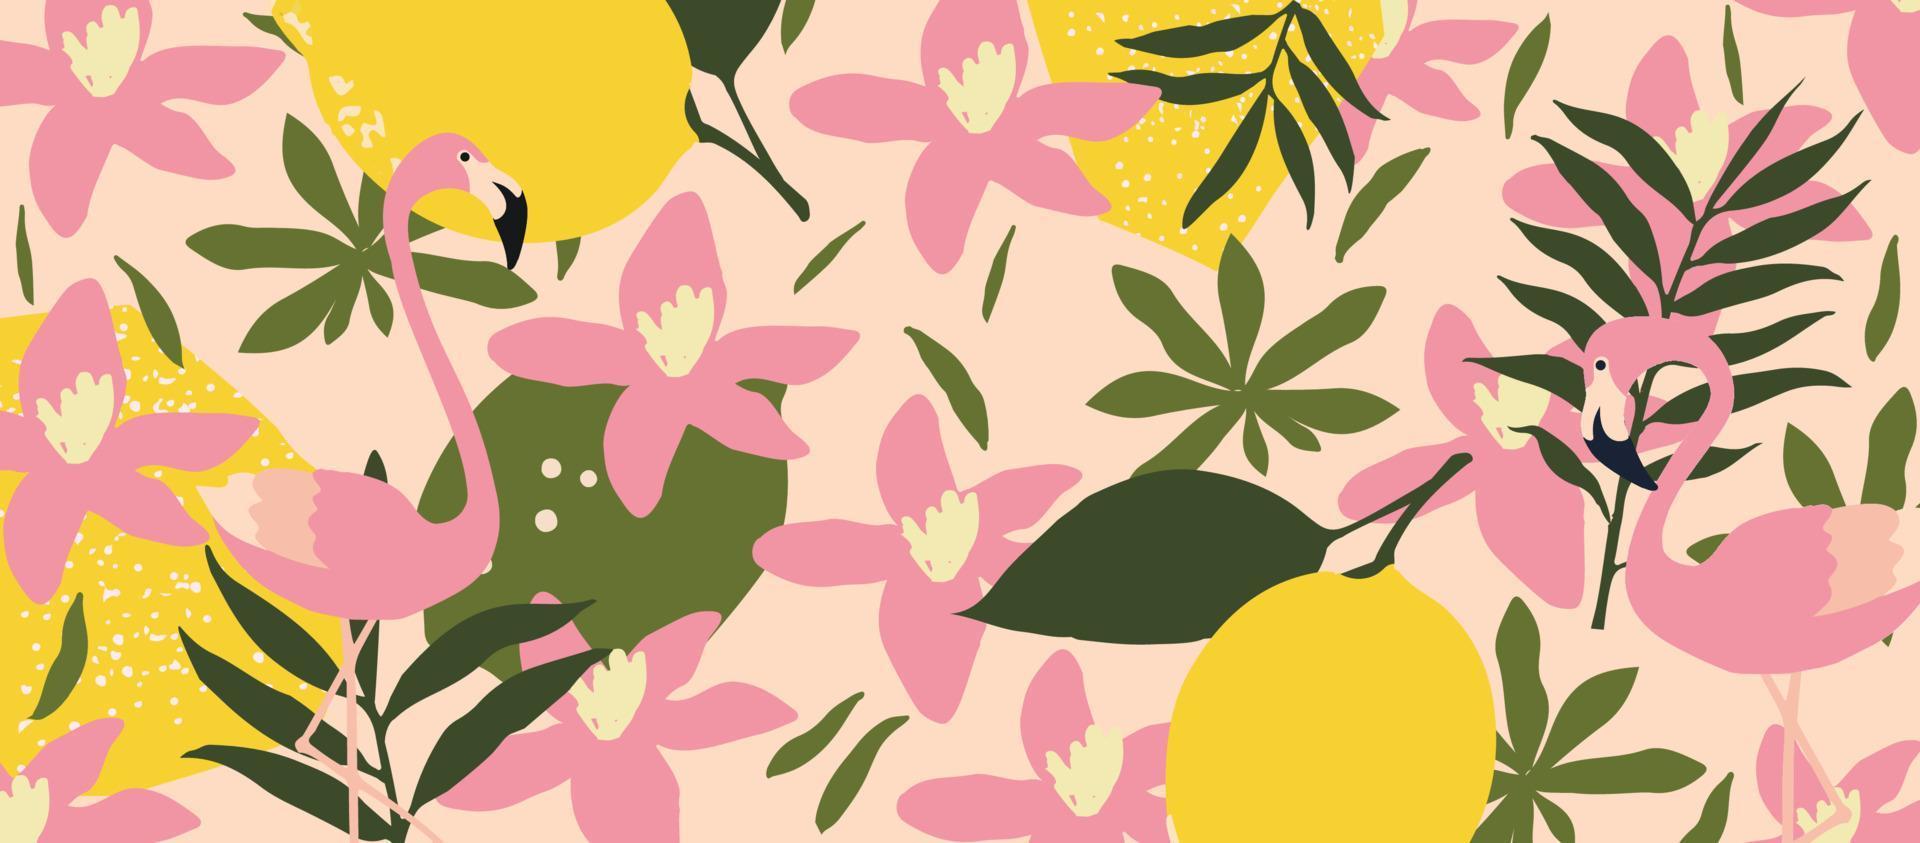 flores de jardim bonito e folhas com padrão colorido de flamingos. pássaros de flamingo com design de ilustração vetorial de elementos botânicos para moda, tecido, papel de parede, cartões, estampas vetor